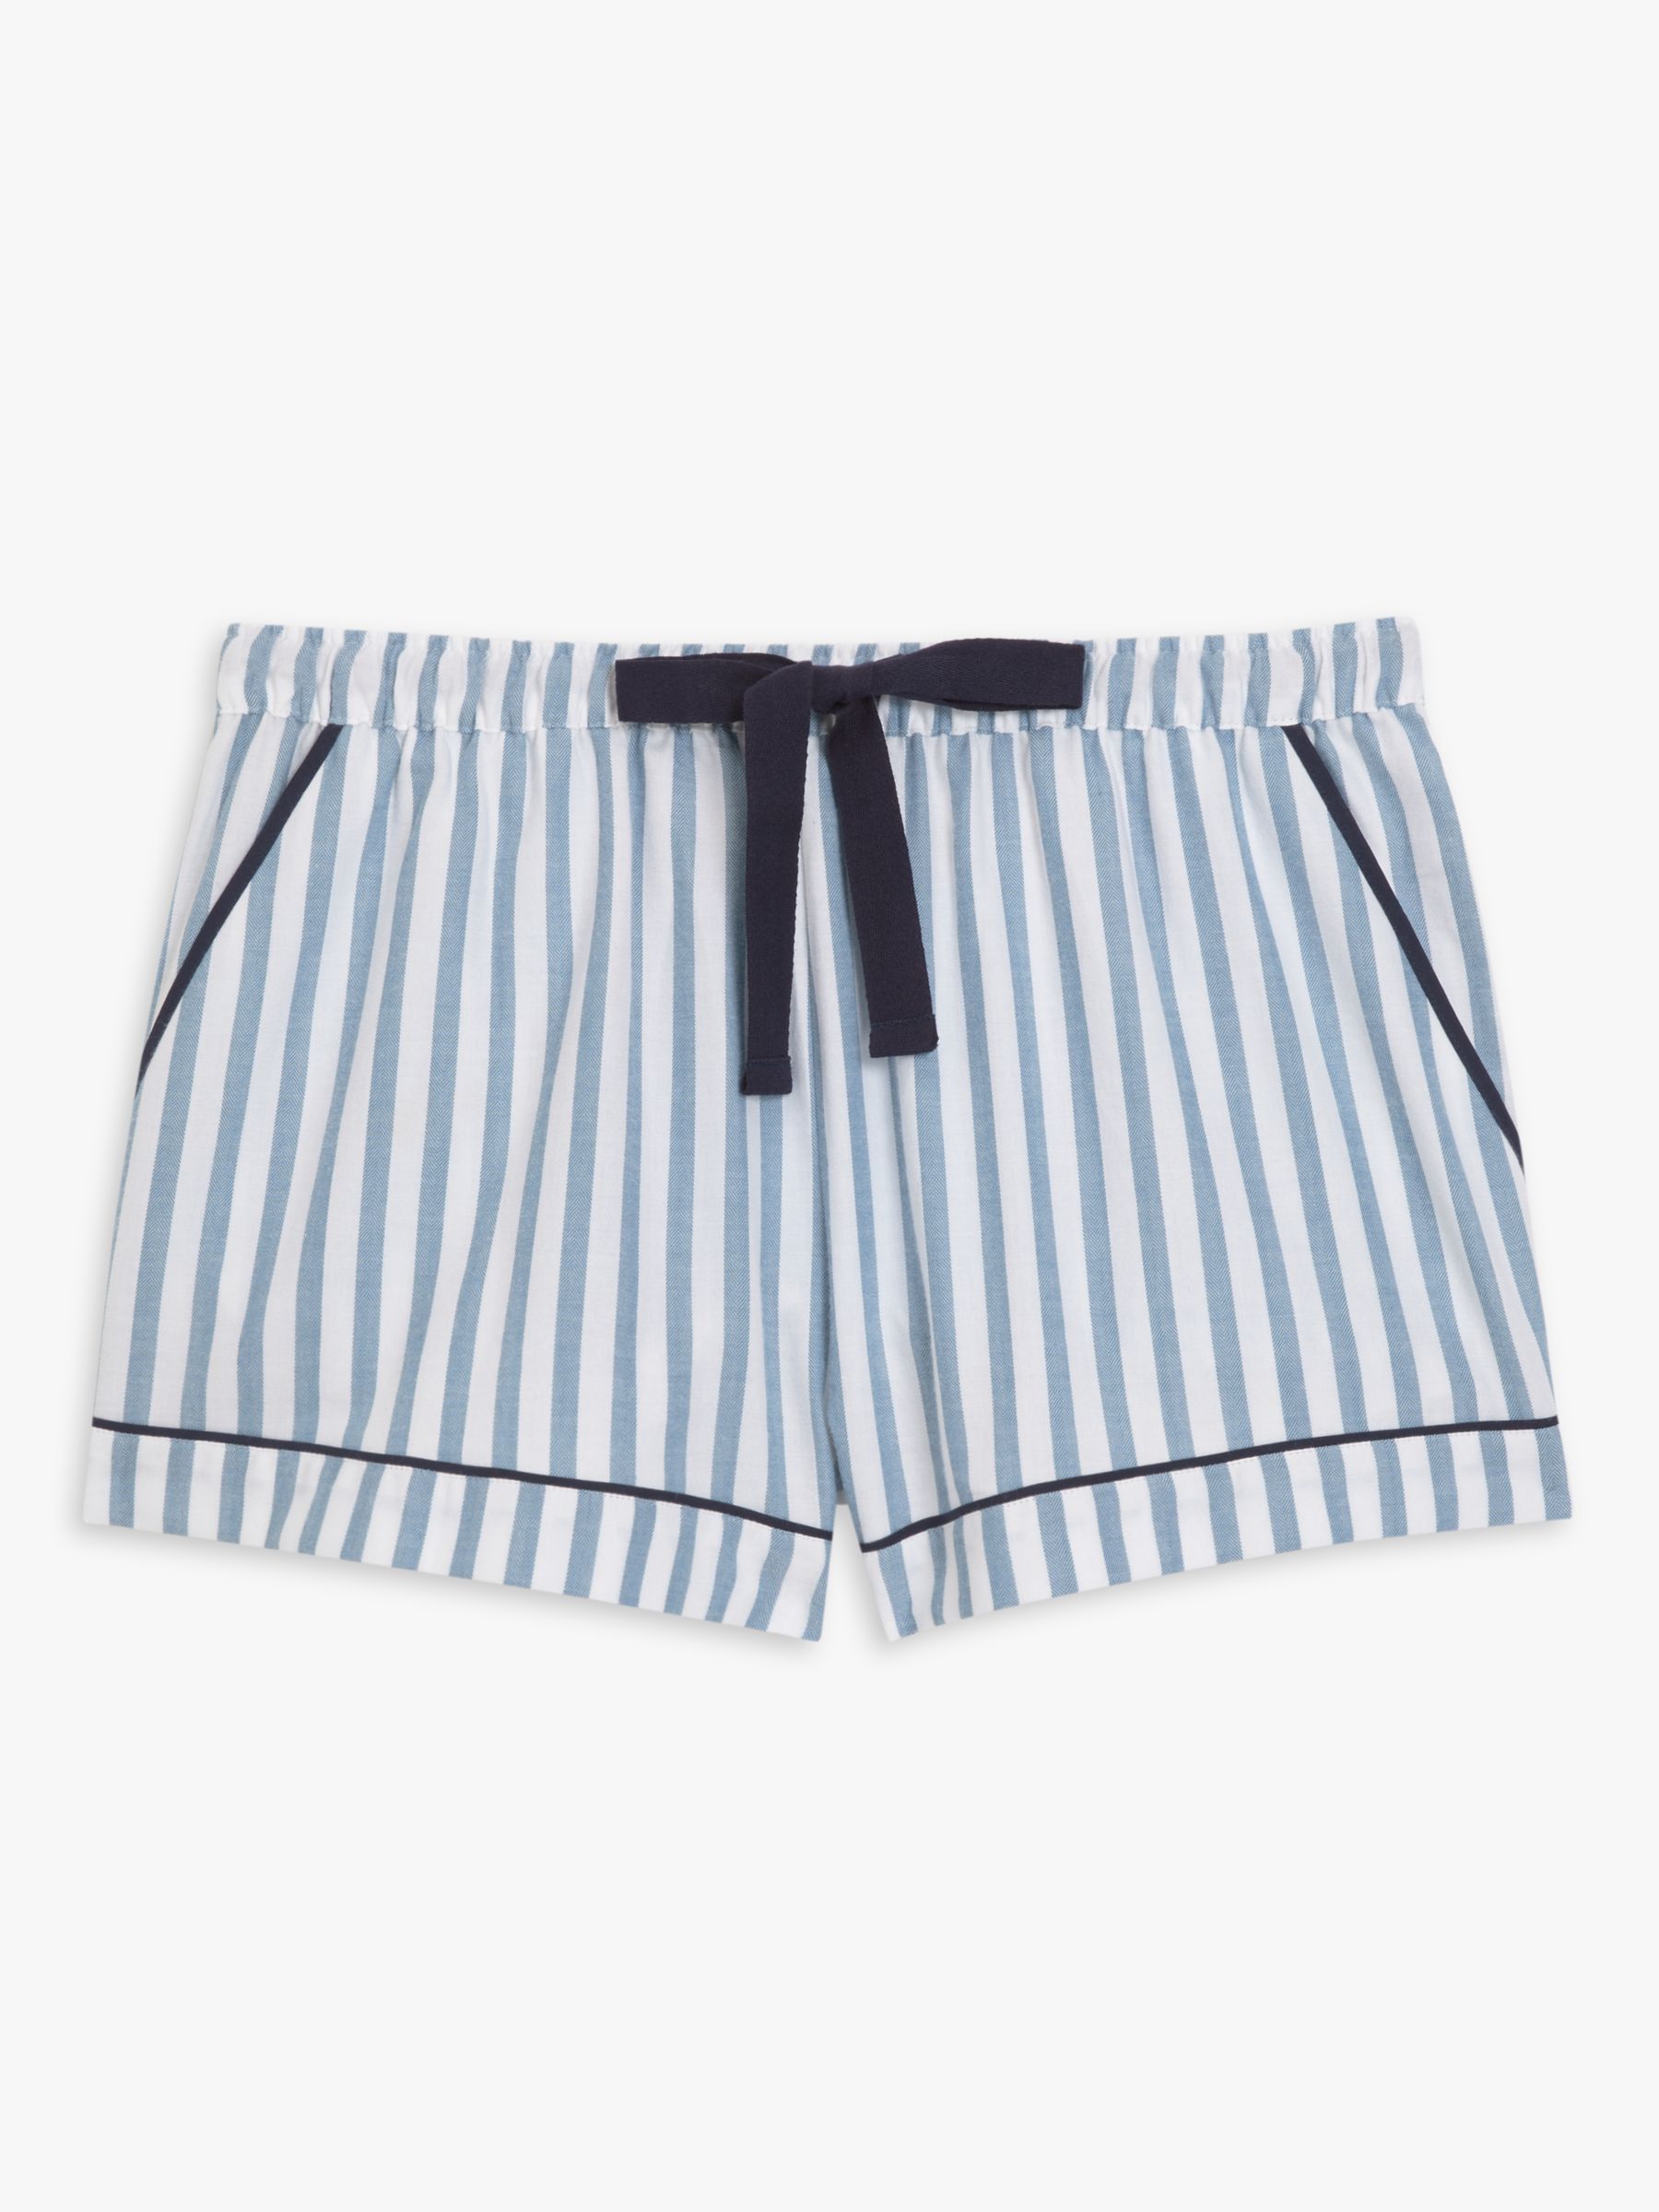 John Lewis Luna Stripe Pyjama Shorts, White/Blue at John Lewis & Partners